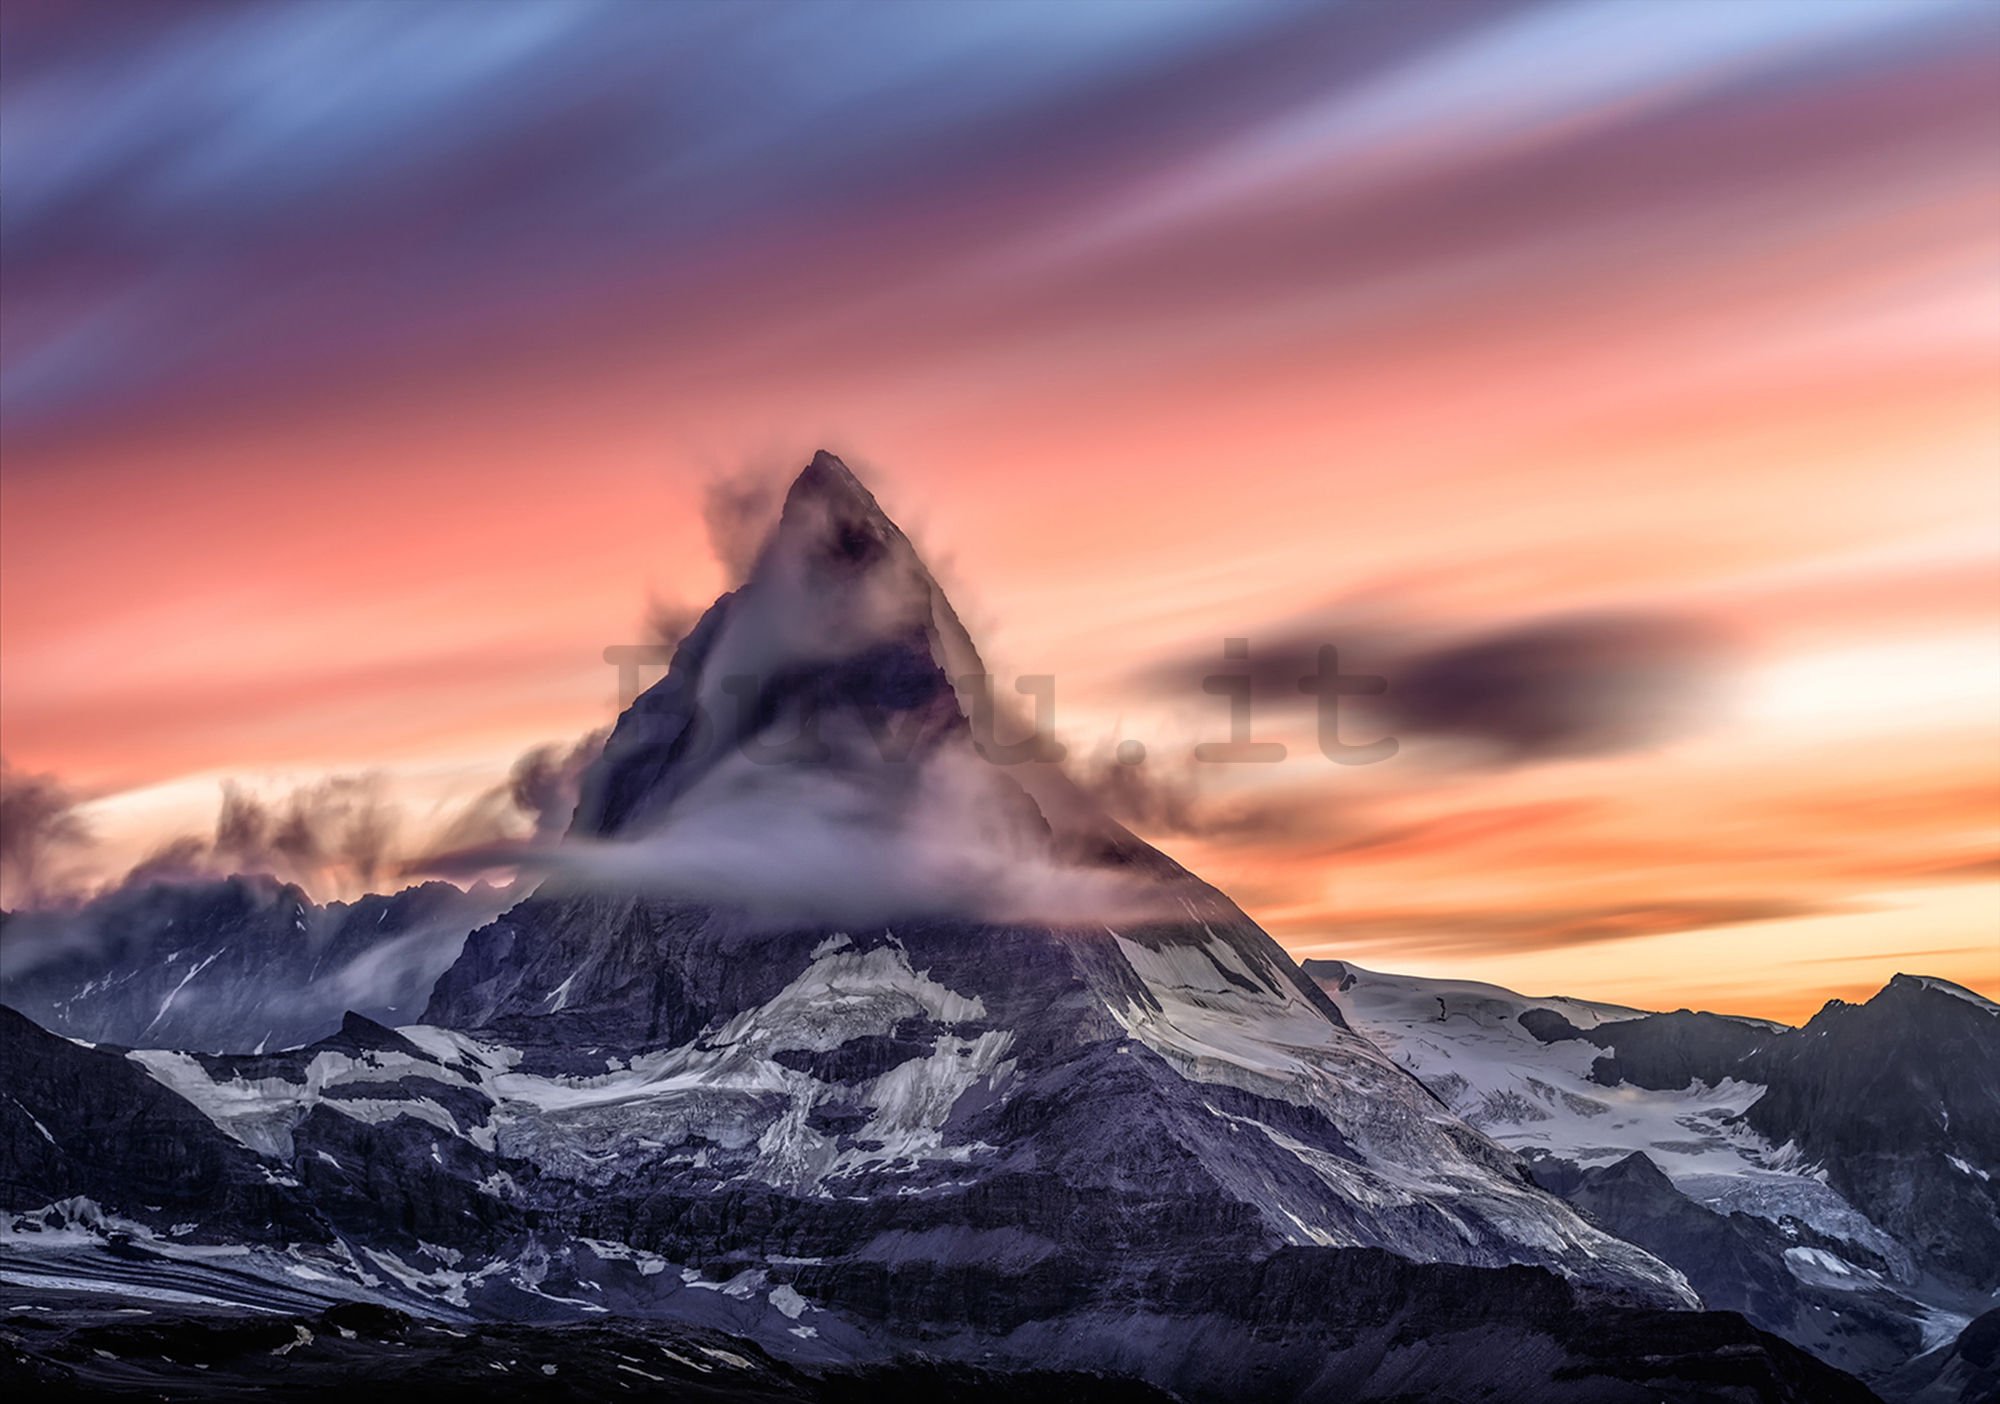 Fotomurale: Matterhorn (1) - 184x254 cm